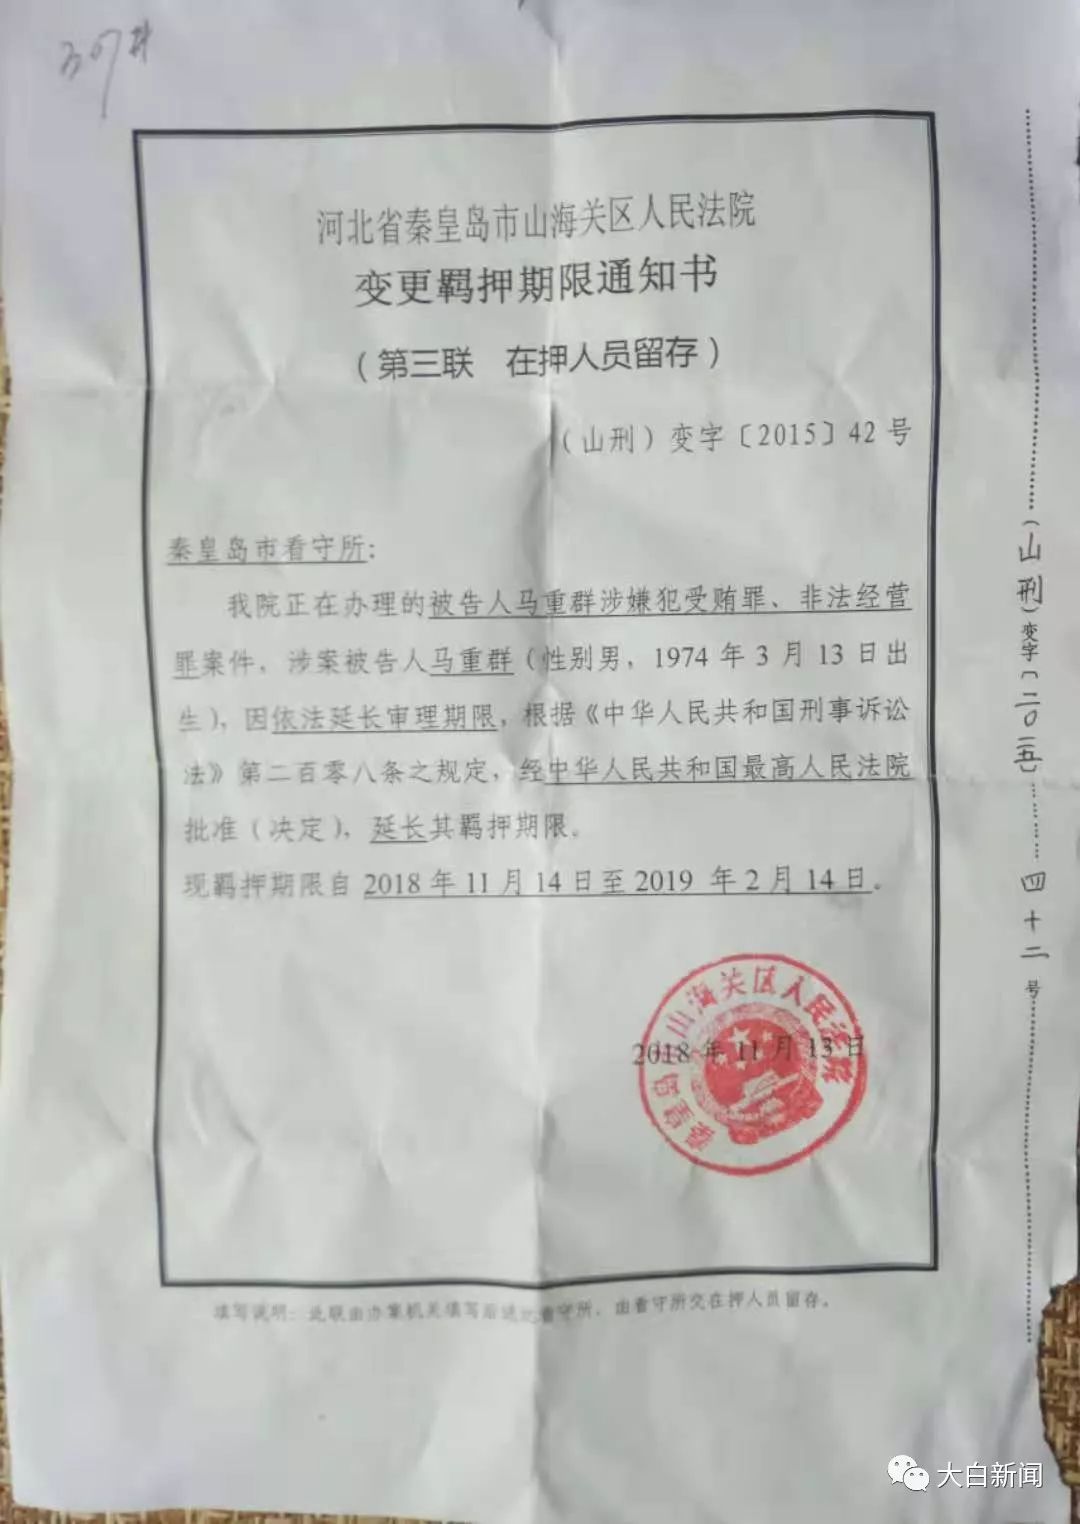 “亿元水官”马超群的弟弟 第8次被延长羁押期限